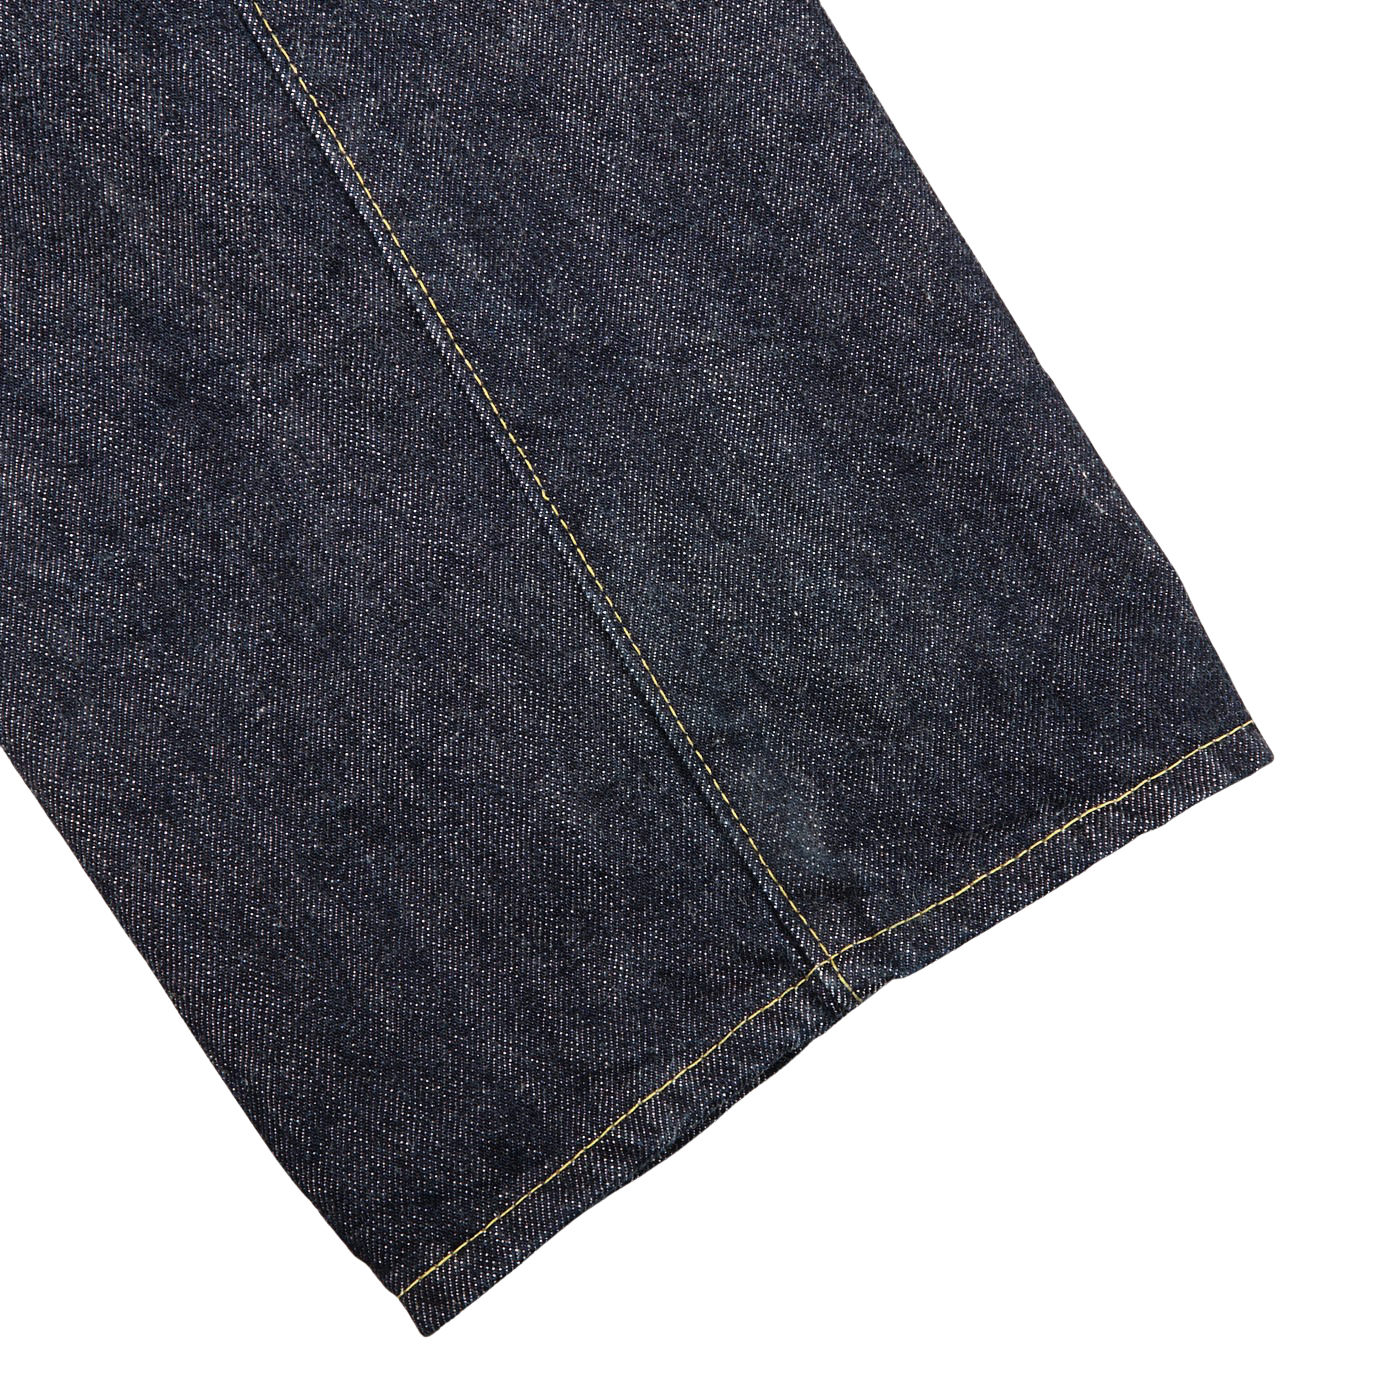 Resolute Dark Blue Cotton 711 One Wash Jeans Cuff